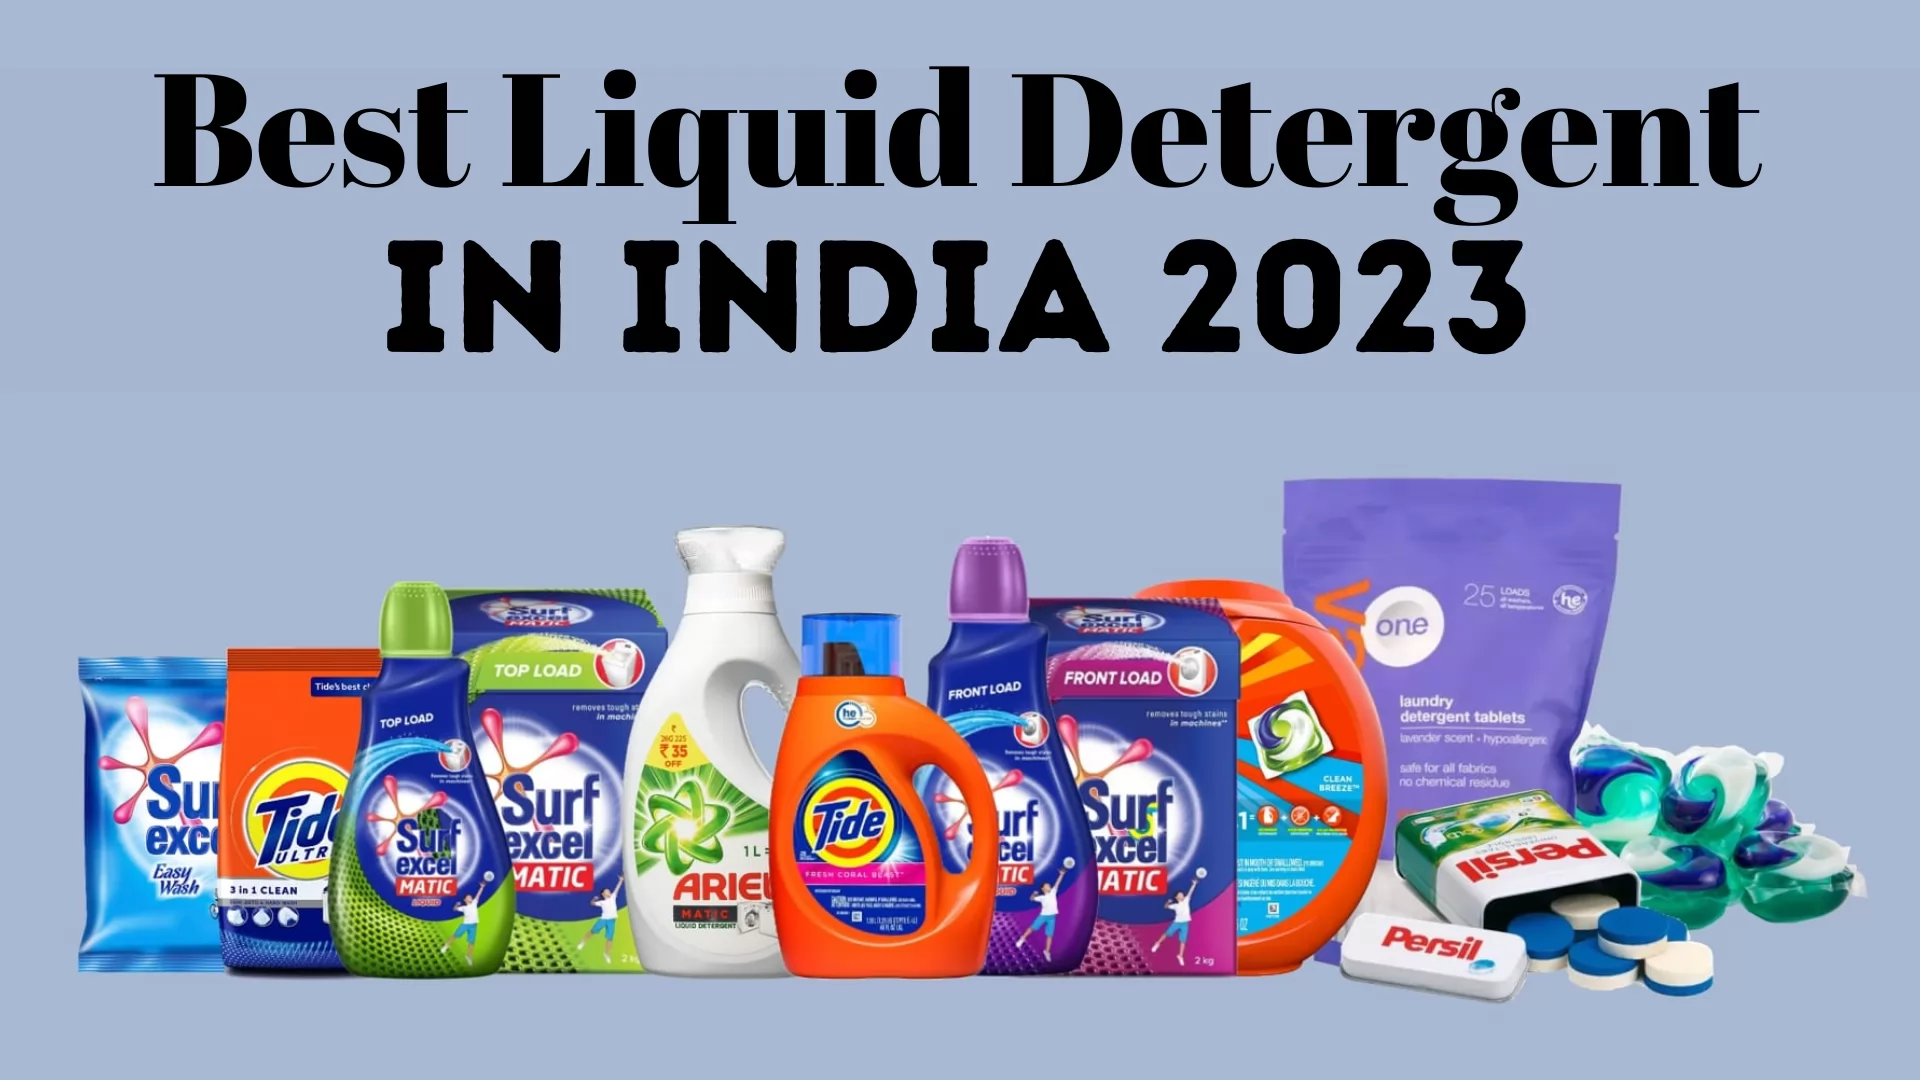 10 Best Liquid Detergent in India 2023